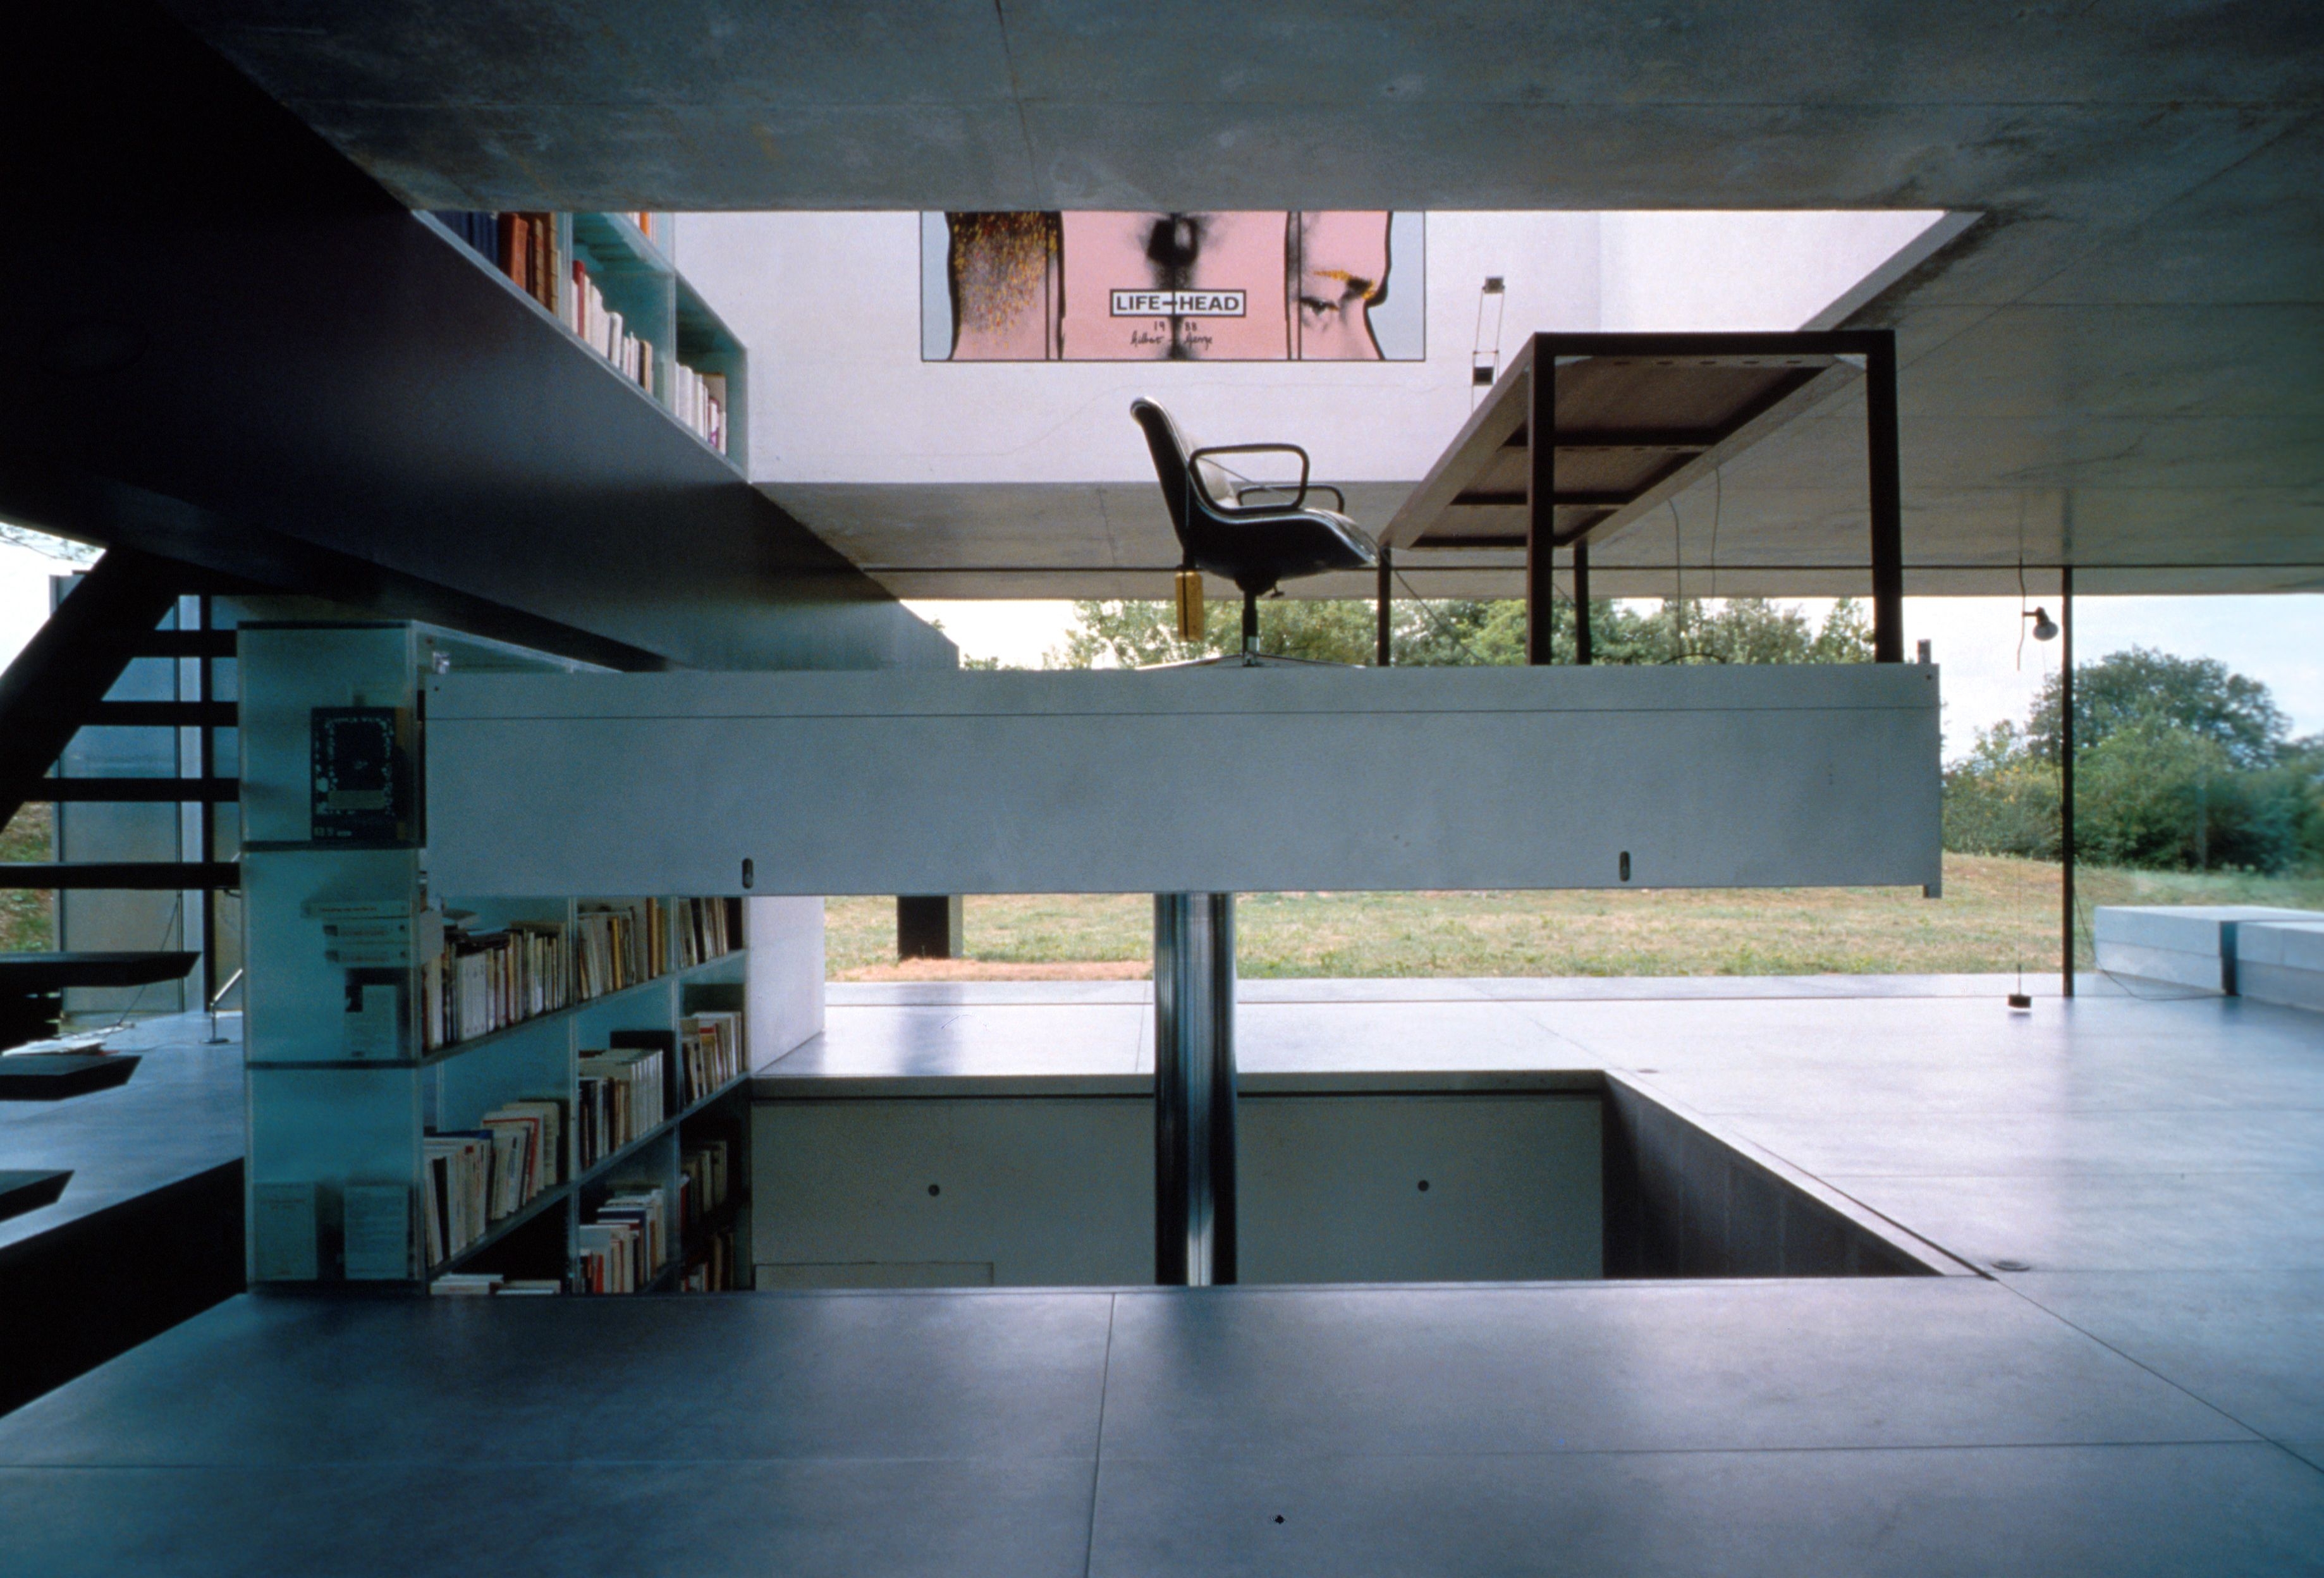 세계적 거장 렘 콜하스가 처음 설계한 주택 메종 보르도. 그의 책과 전시를 본 건축주가 ‘당신은 역사에 남을 테니 내 자본으로 당신의 작가성을 실현하라’고 주문했다. 콜하스는 명작을 지었고 건축주의 후대는 건물을 활용해 여러 사업을 벌인다.